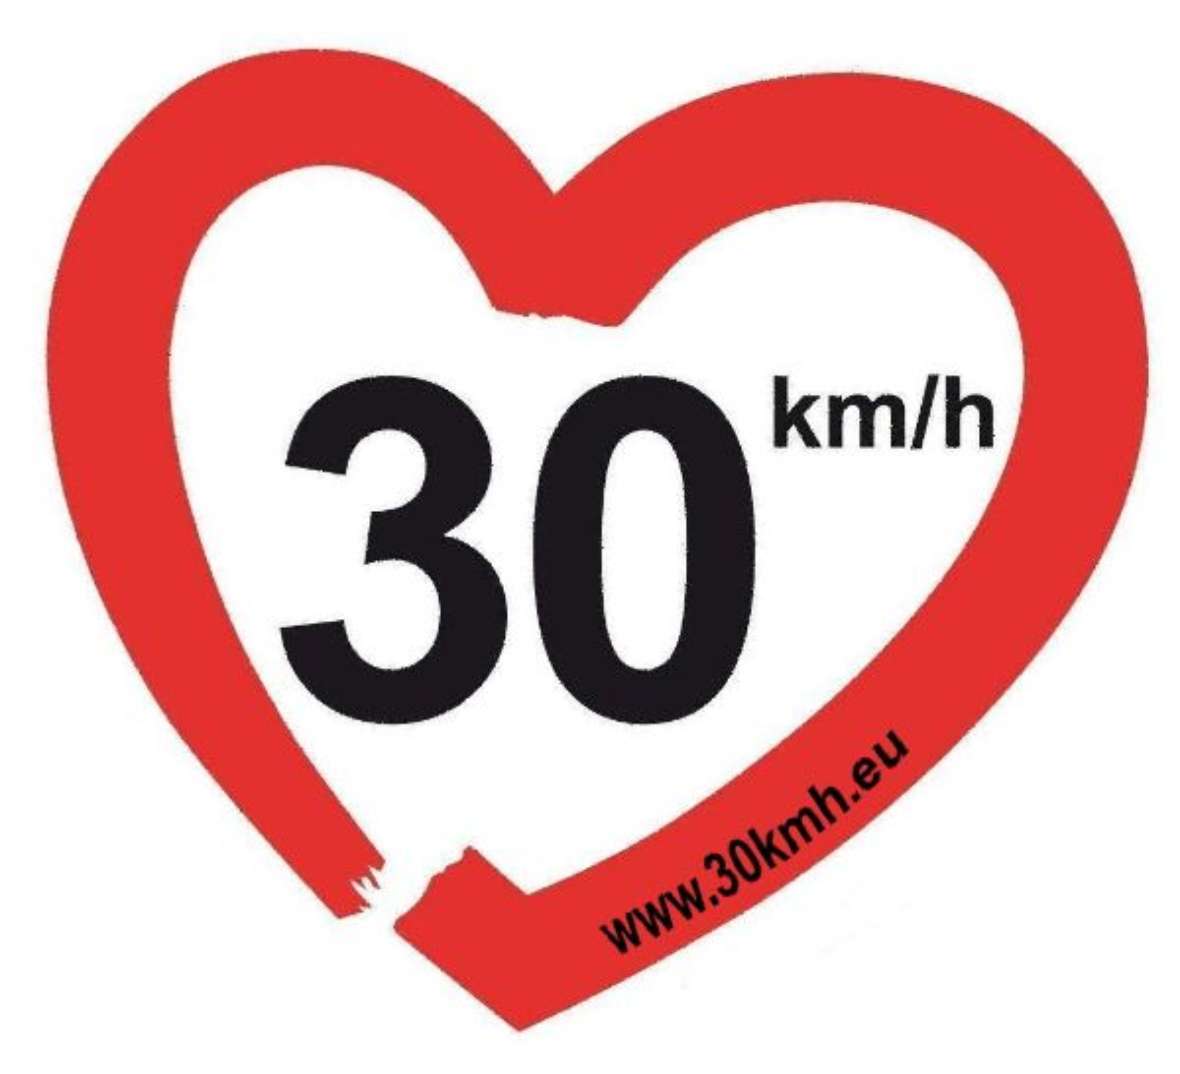 Logo der Europäischen Bürgerinitiative Tempo30, ein Geschwindigkeitsbegrenzungsschild mit 30 km/h in Herzform